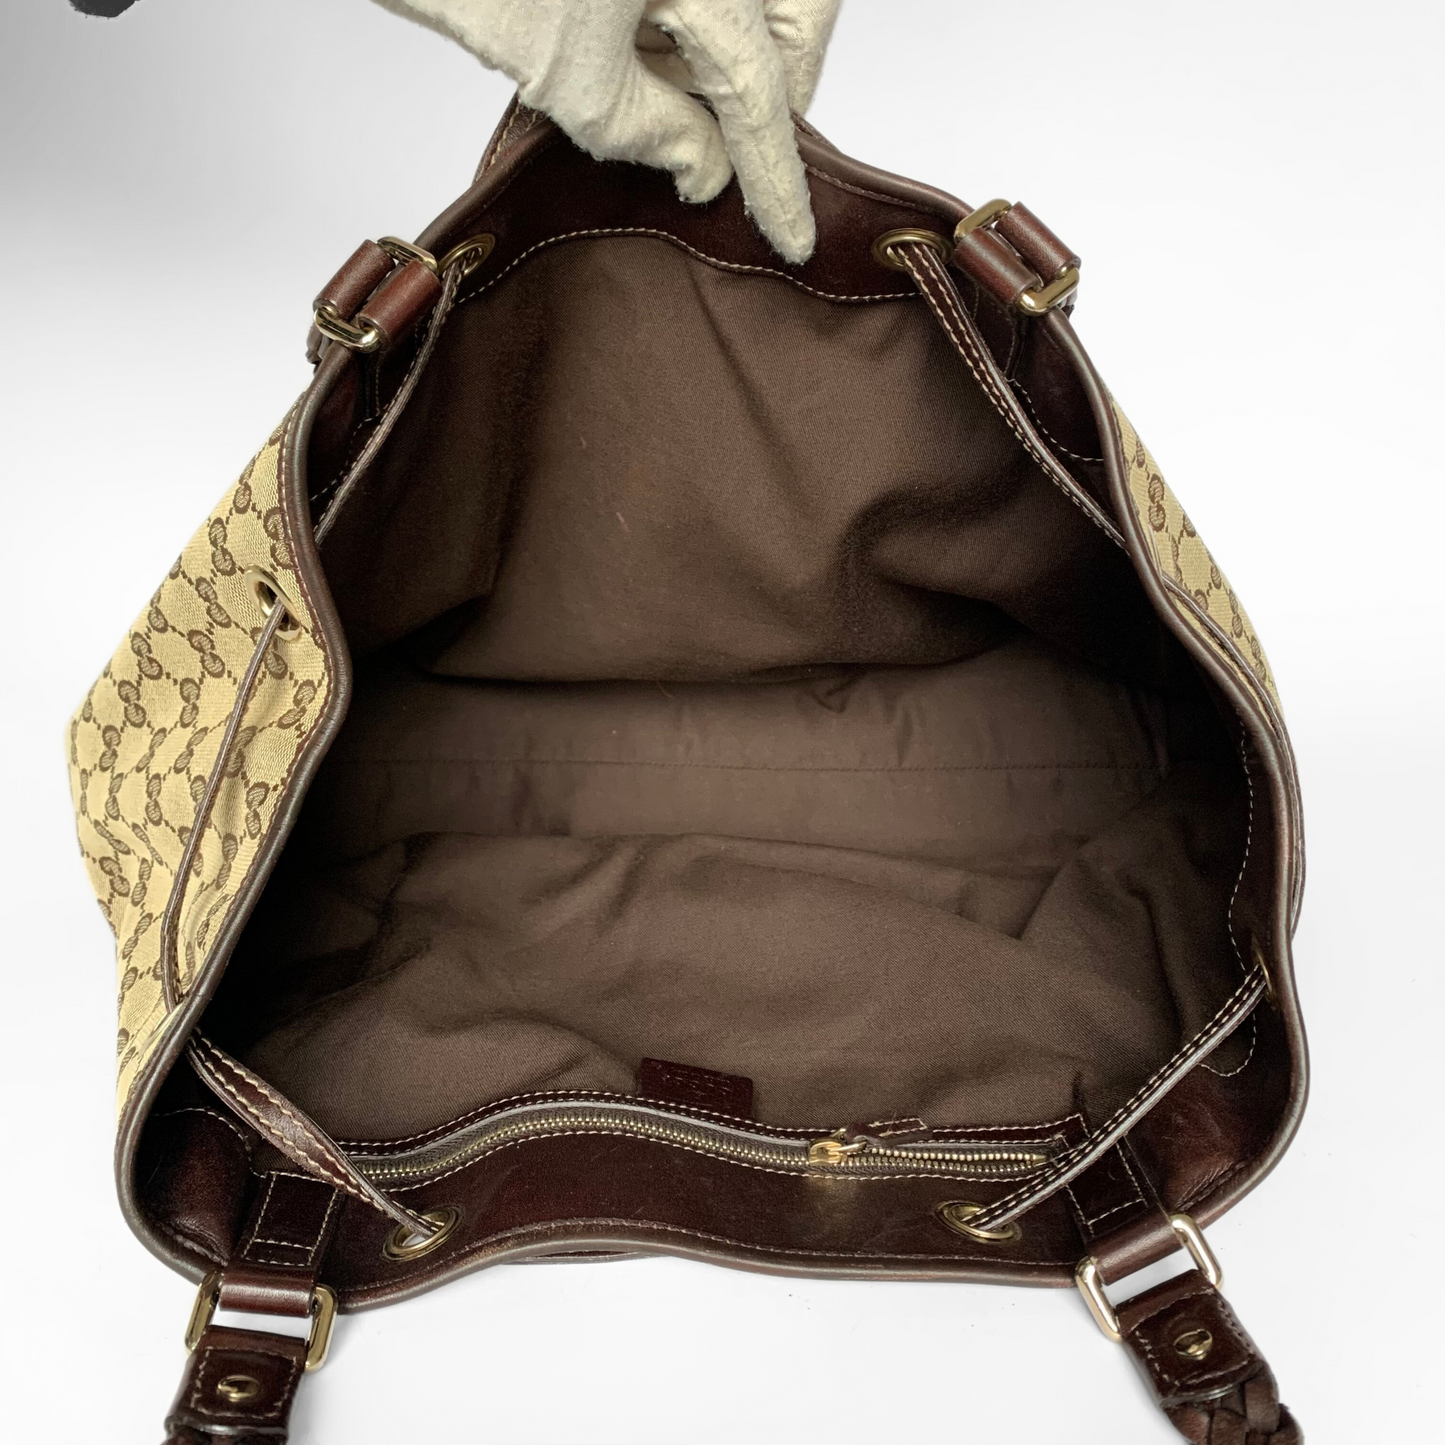 Gucci Gucci Peggy Tote Bag Toile Monogram - Sacs à main - Etoile Luxury Vintage